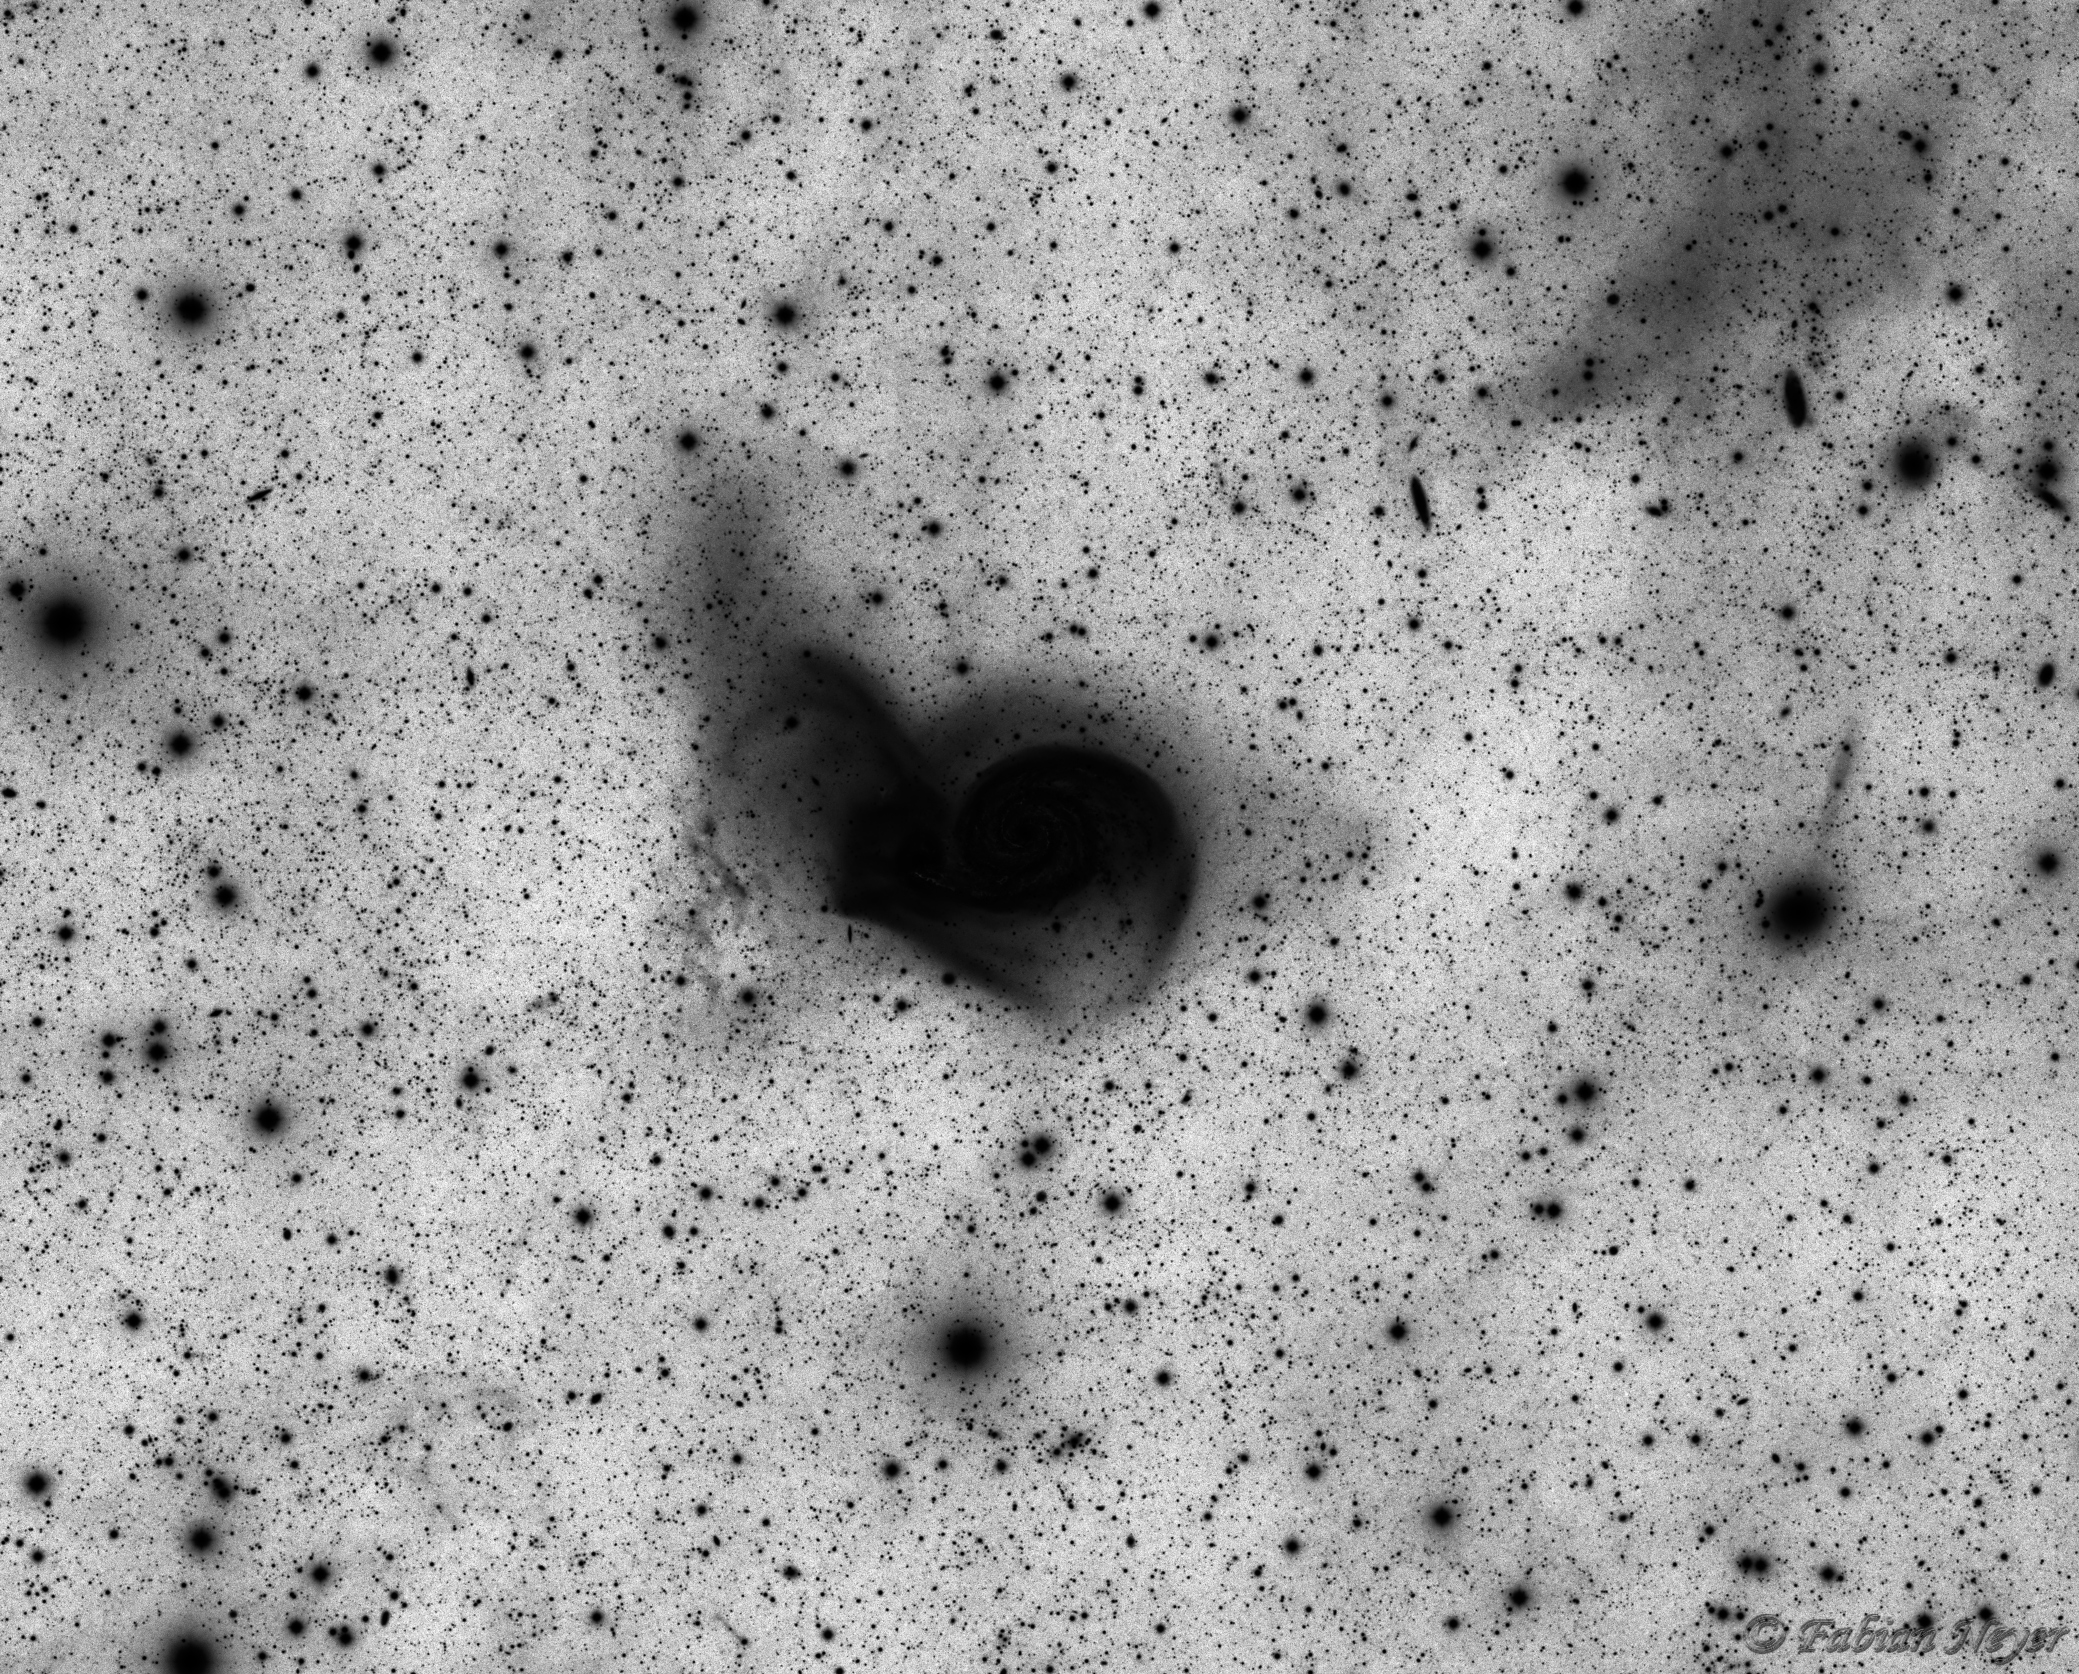 M51 Luminance inverted